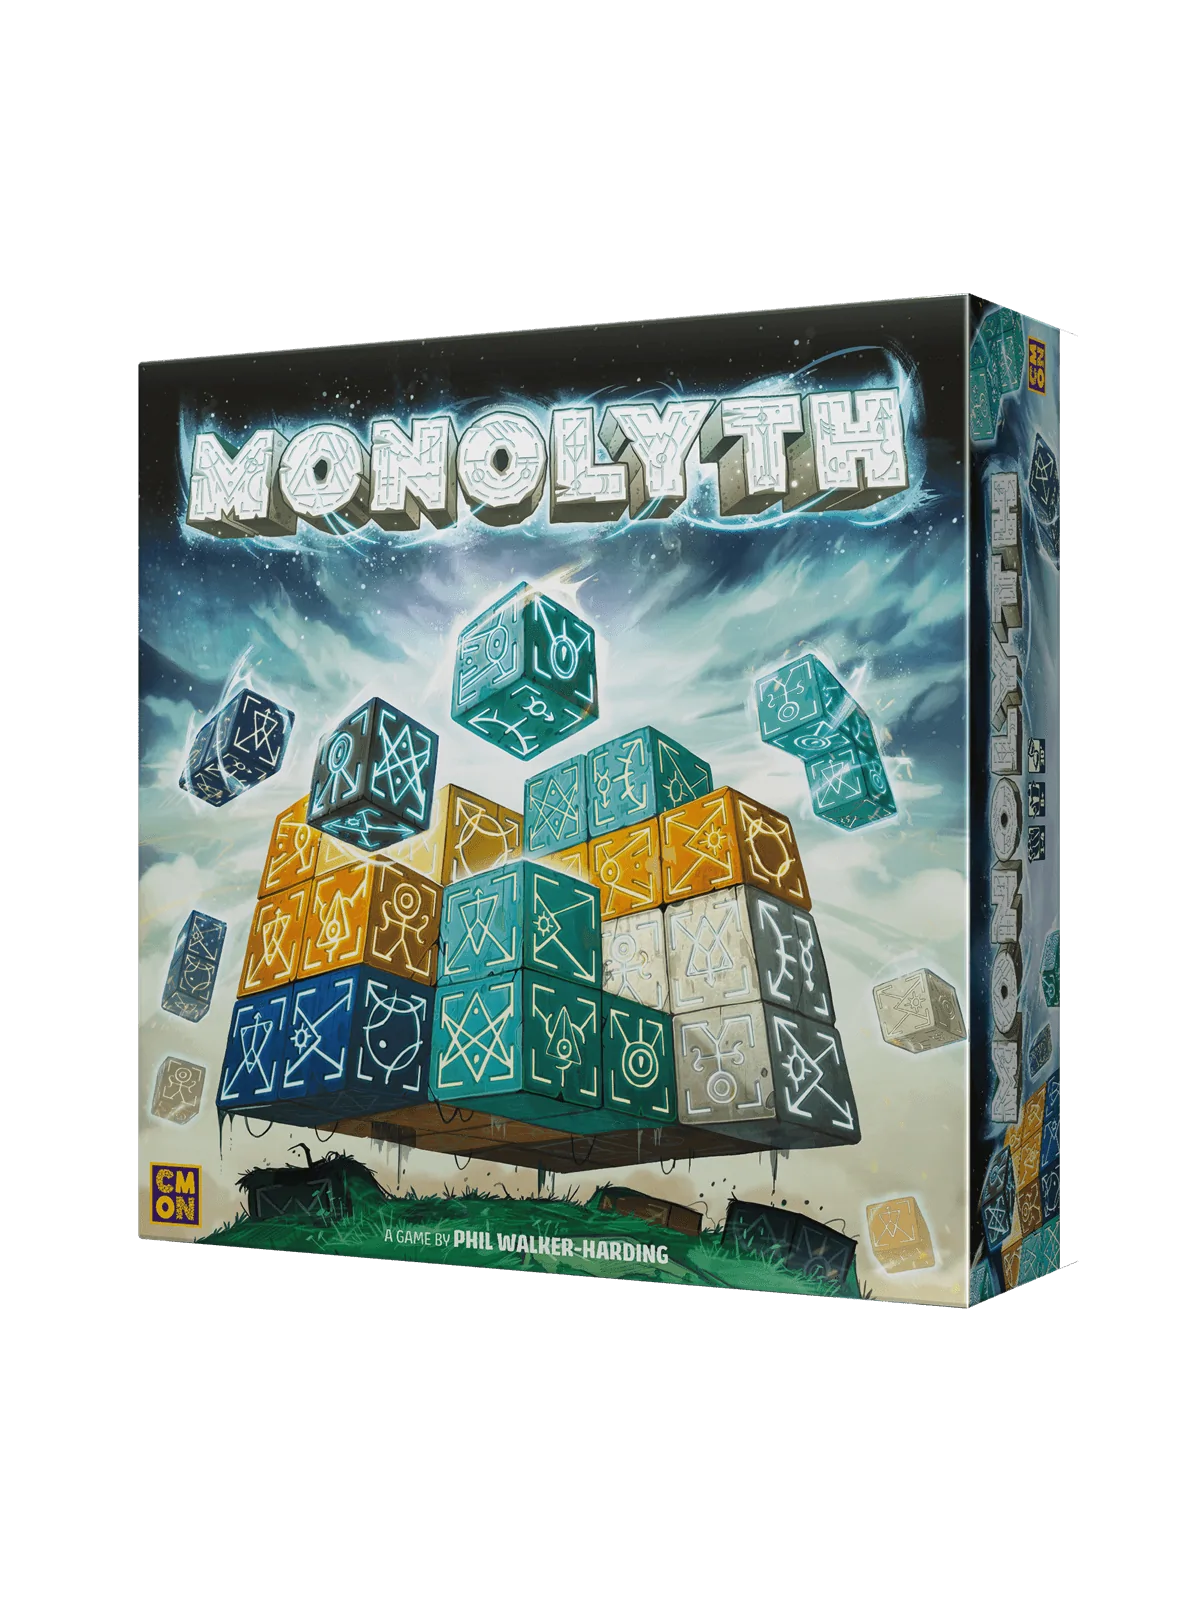 Comprar Monolyth barato al mejor precio 44,99 € de CMON